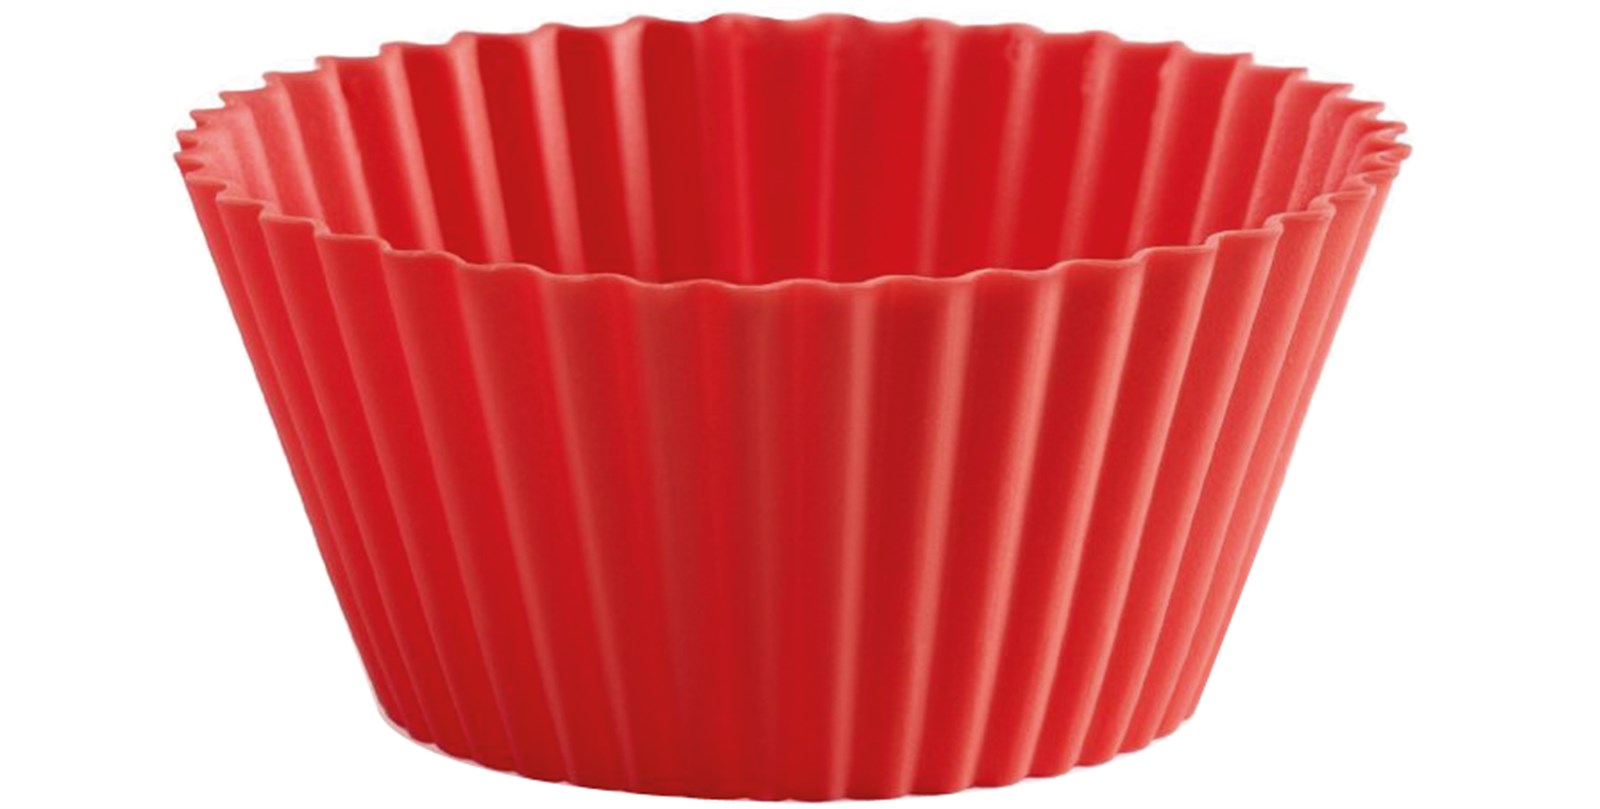 Backform 6er Set Muffin Rot, Ø7x3.5 cm in Rot präsentiert im Onlineshop von KAQTU Design AG. Backen ist von Lékué